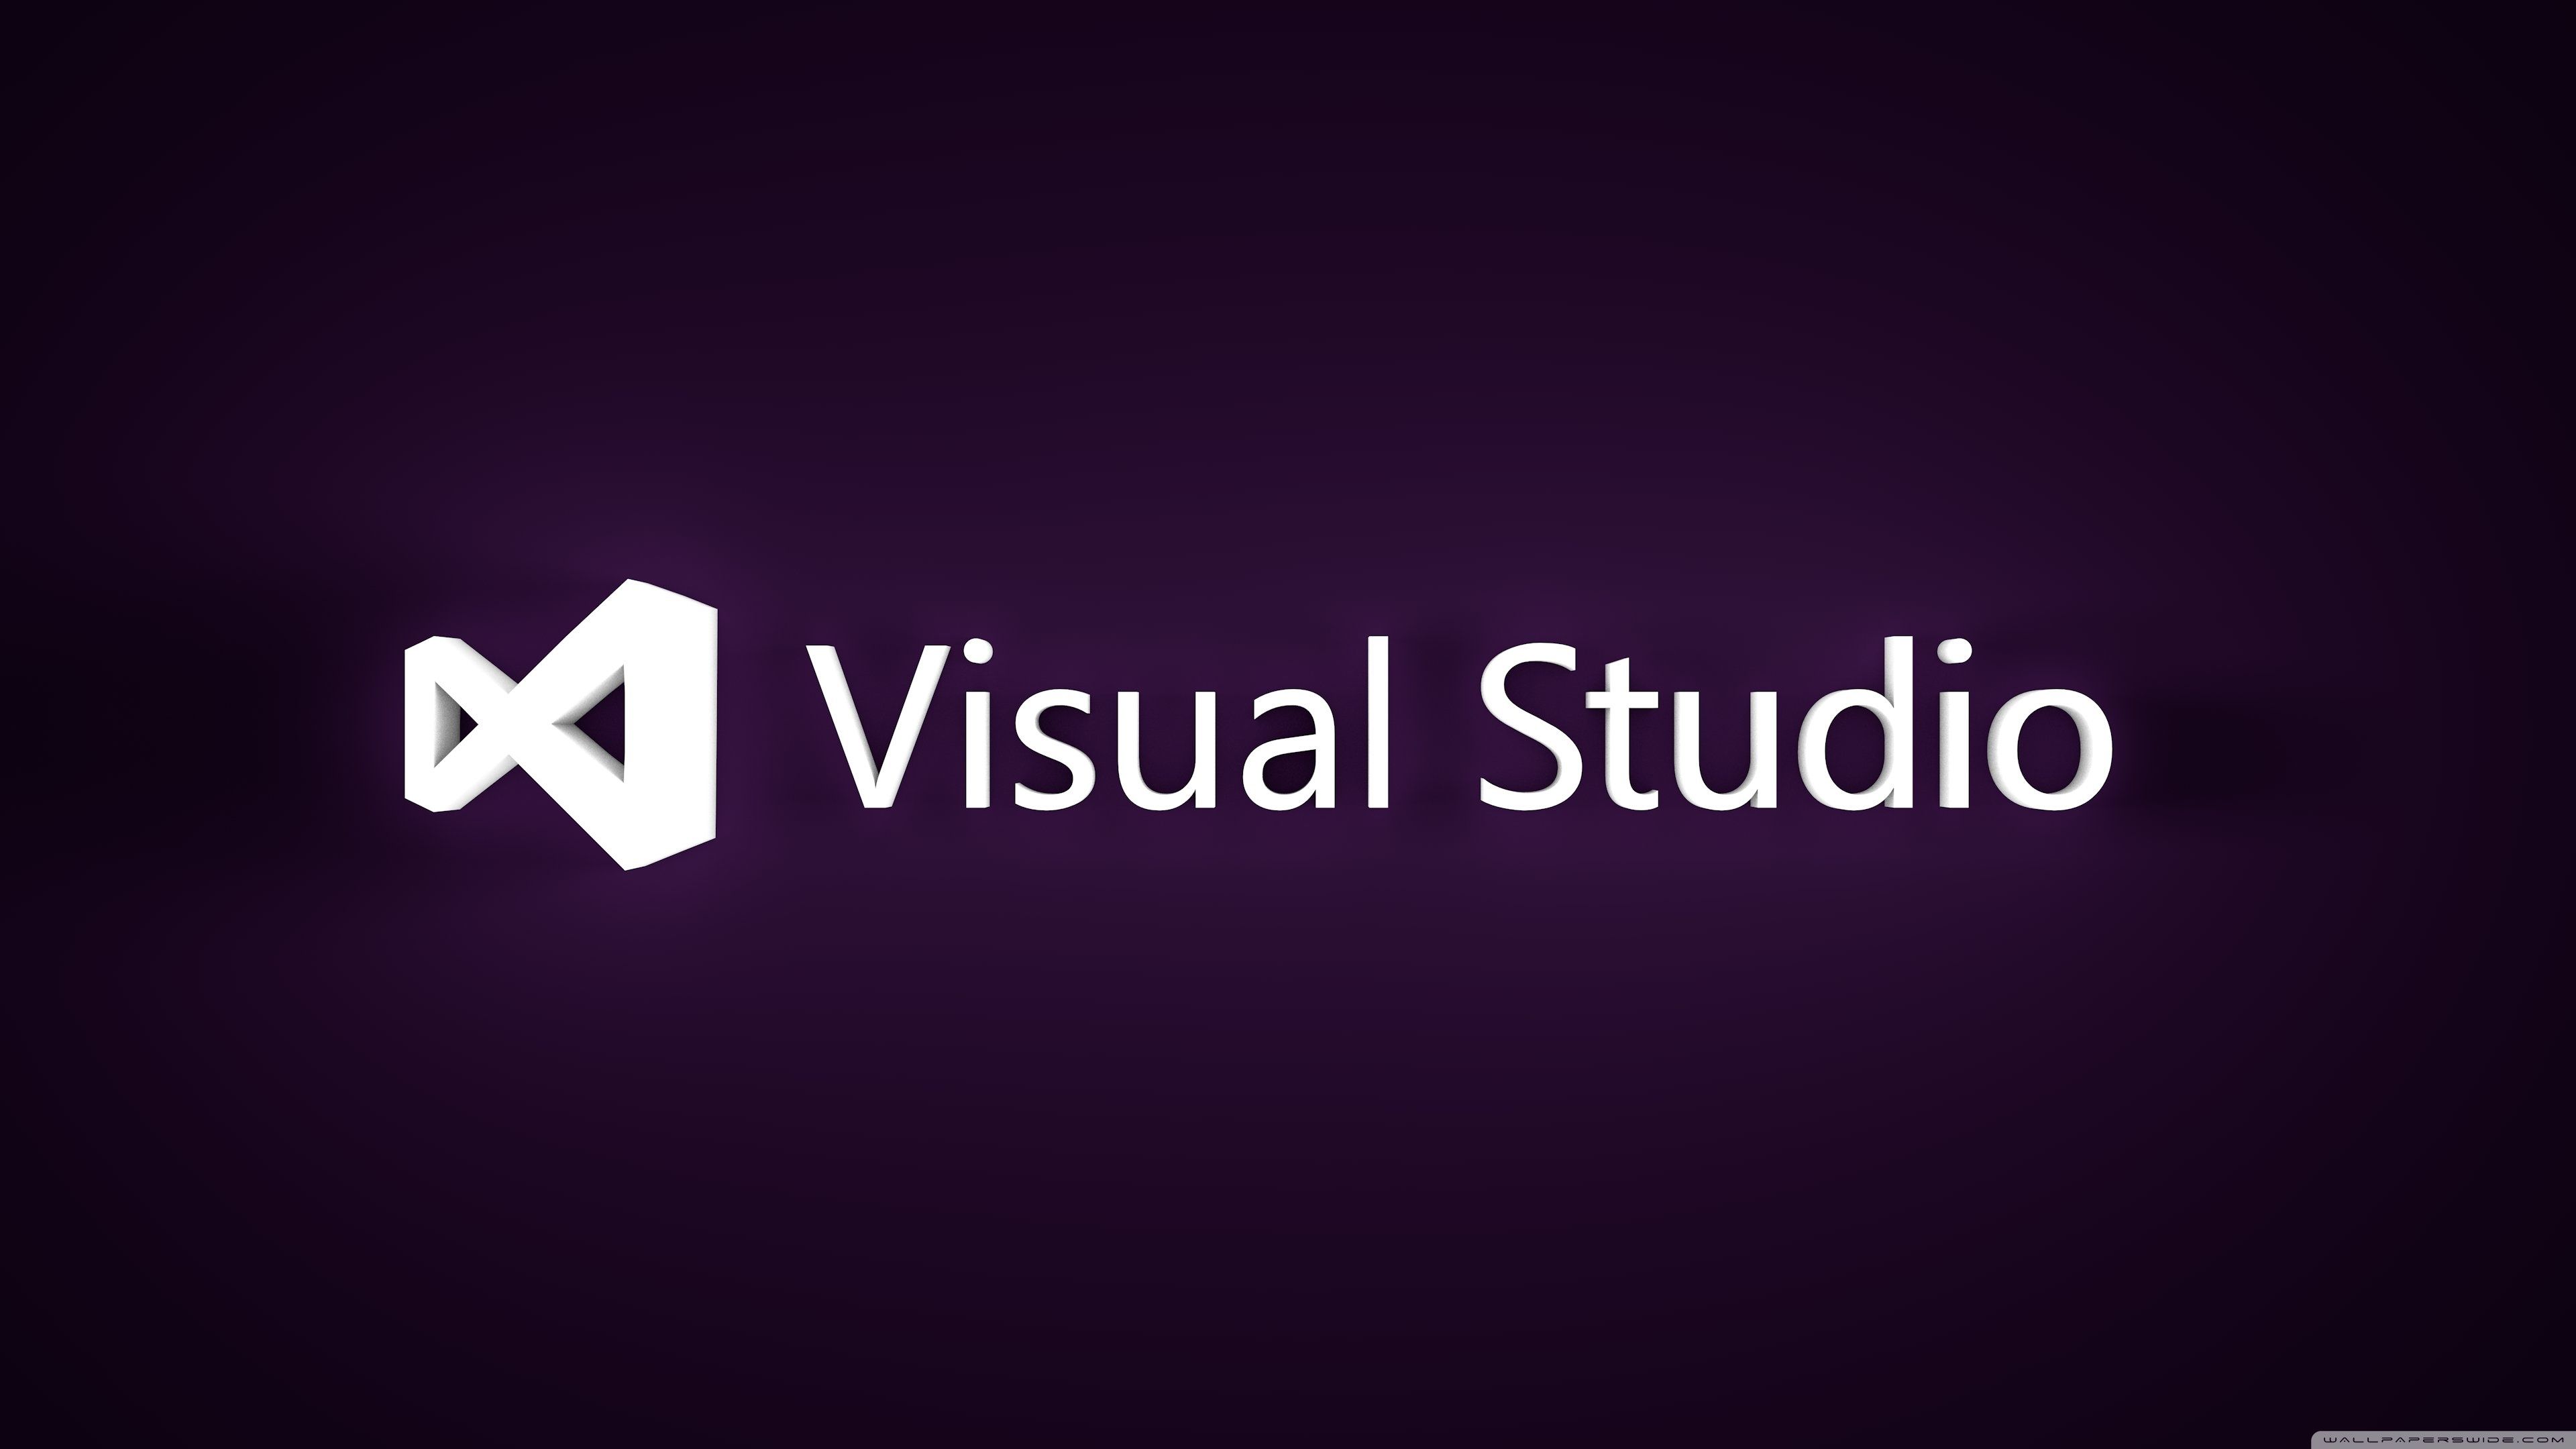 visual studio wallpaper,text,font,logo,purple,violet